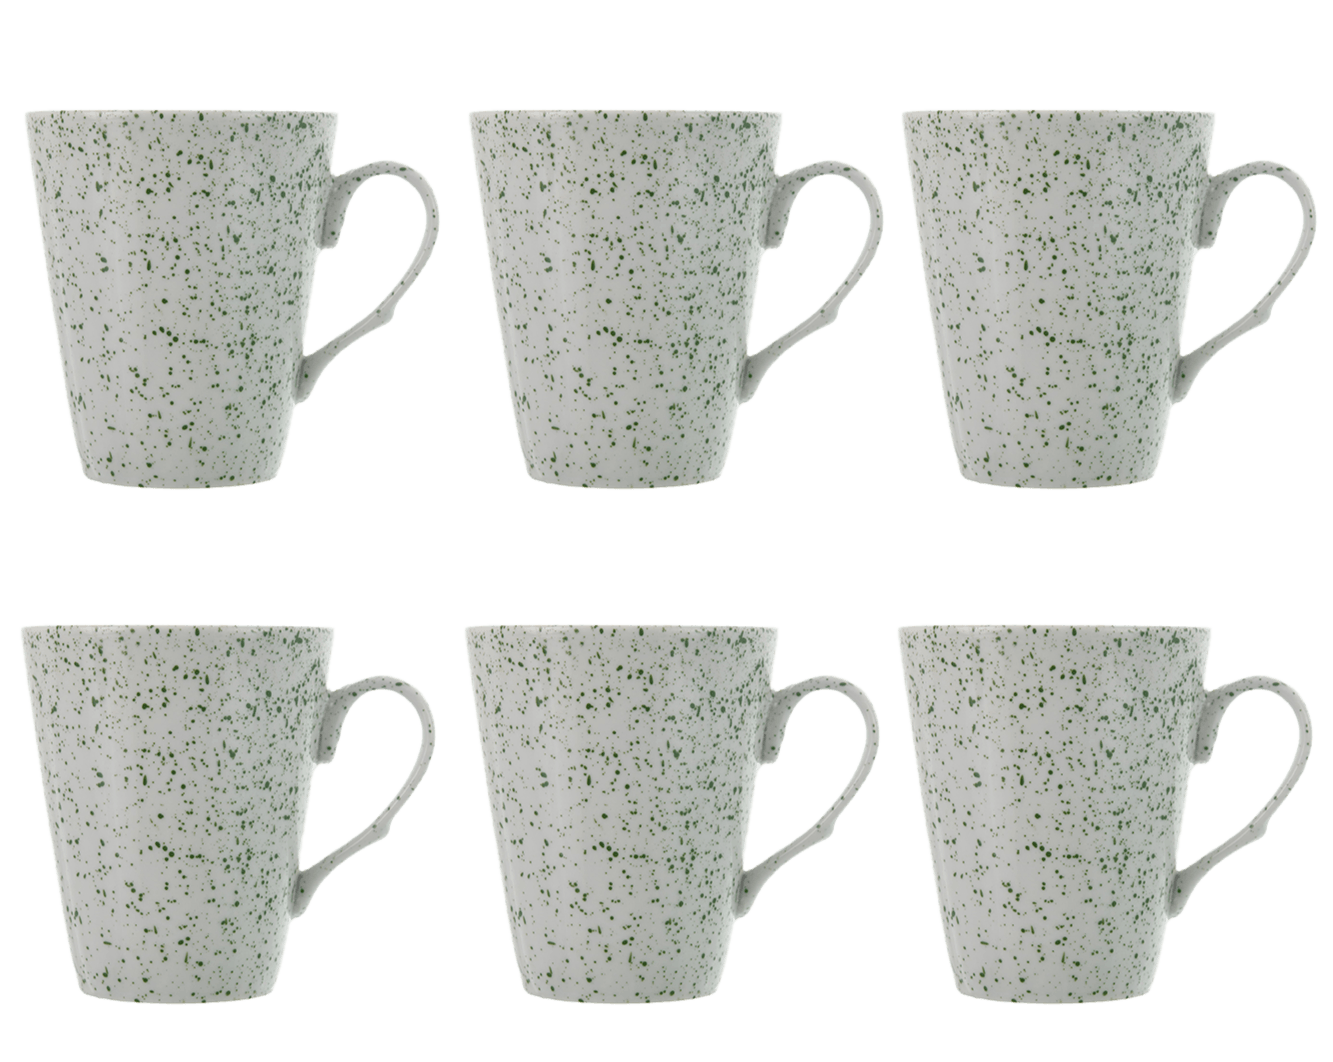 Senzo - منقط - طقم أكواب قهوة 6 قطع - أخضر - 250 مل - 520001157x6